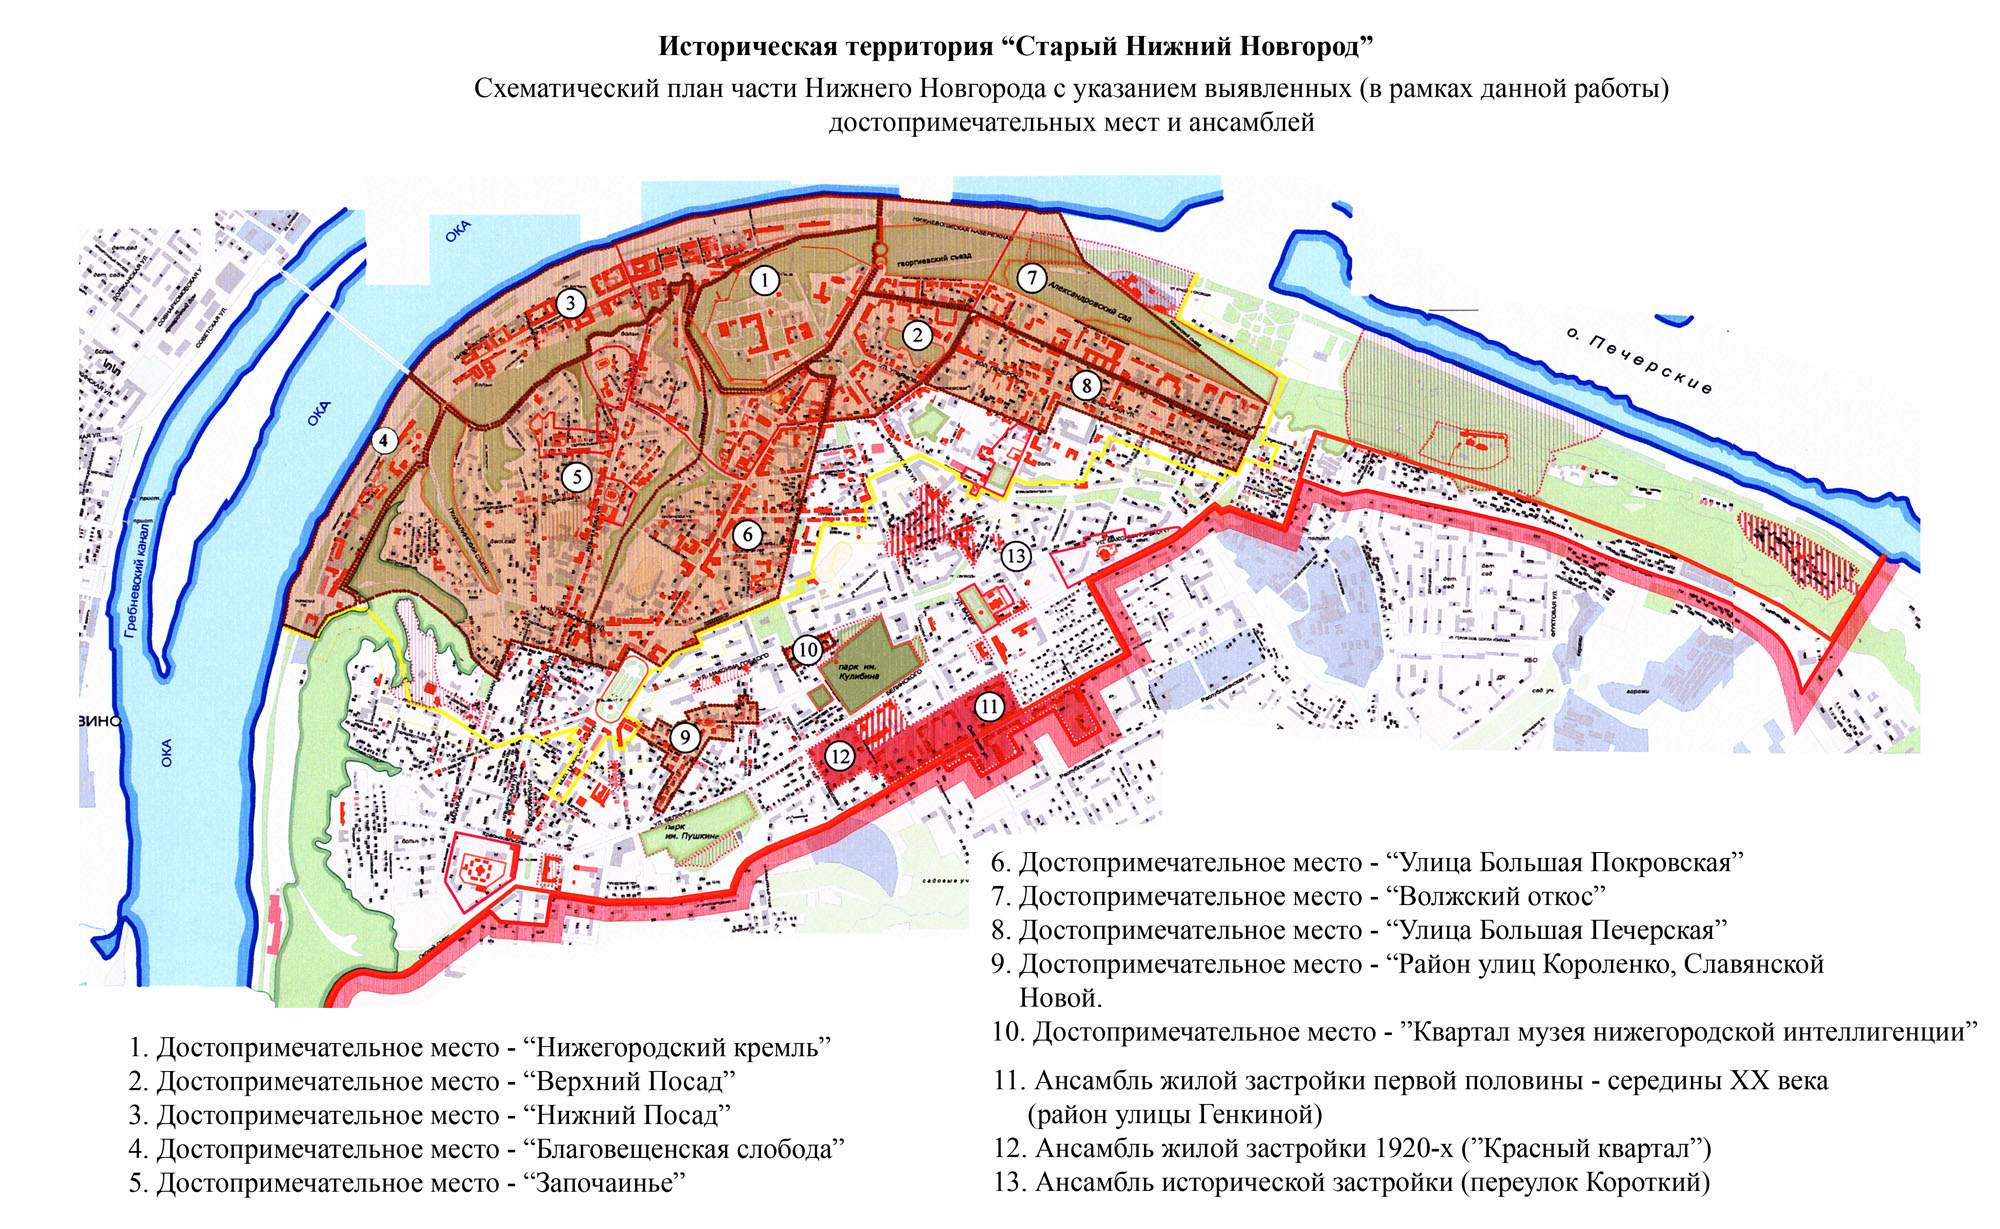 Карта "Историческая территория "Старый Нижний Новгород"